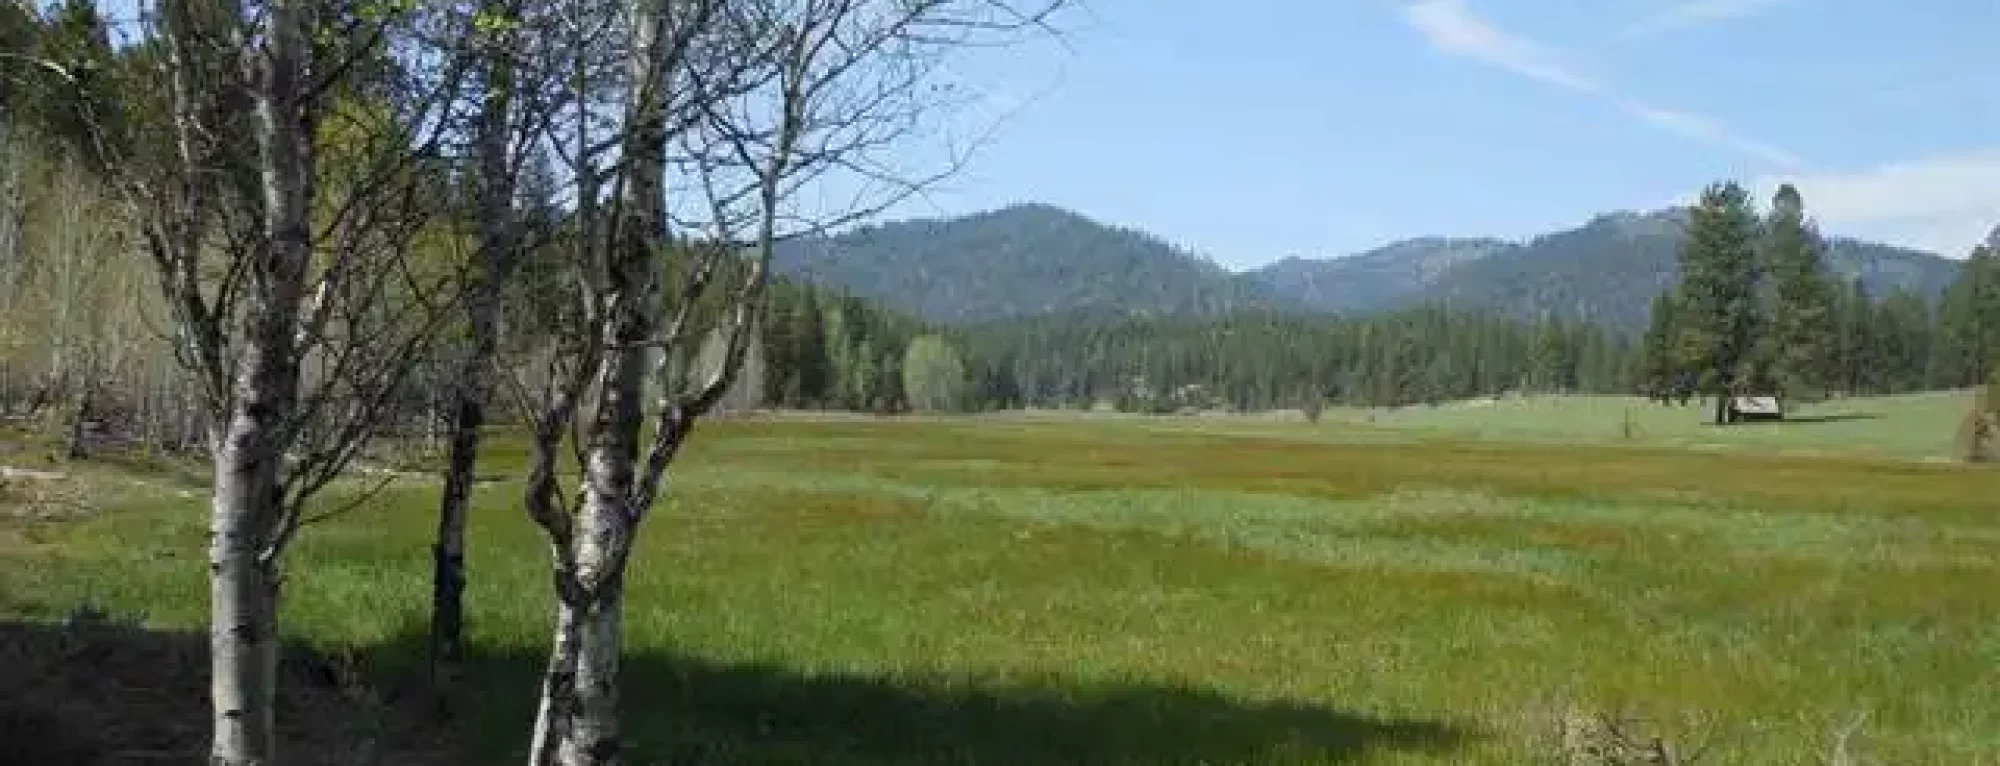 Trail-creek-meadow-ranch-forsale